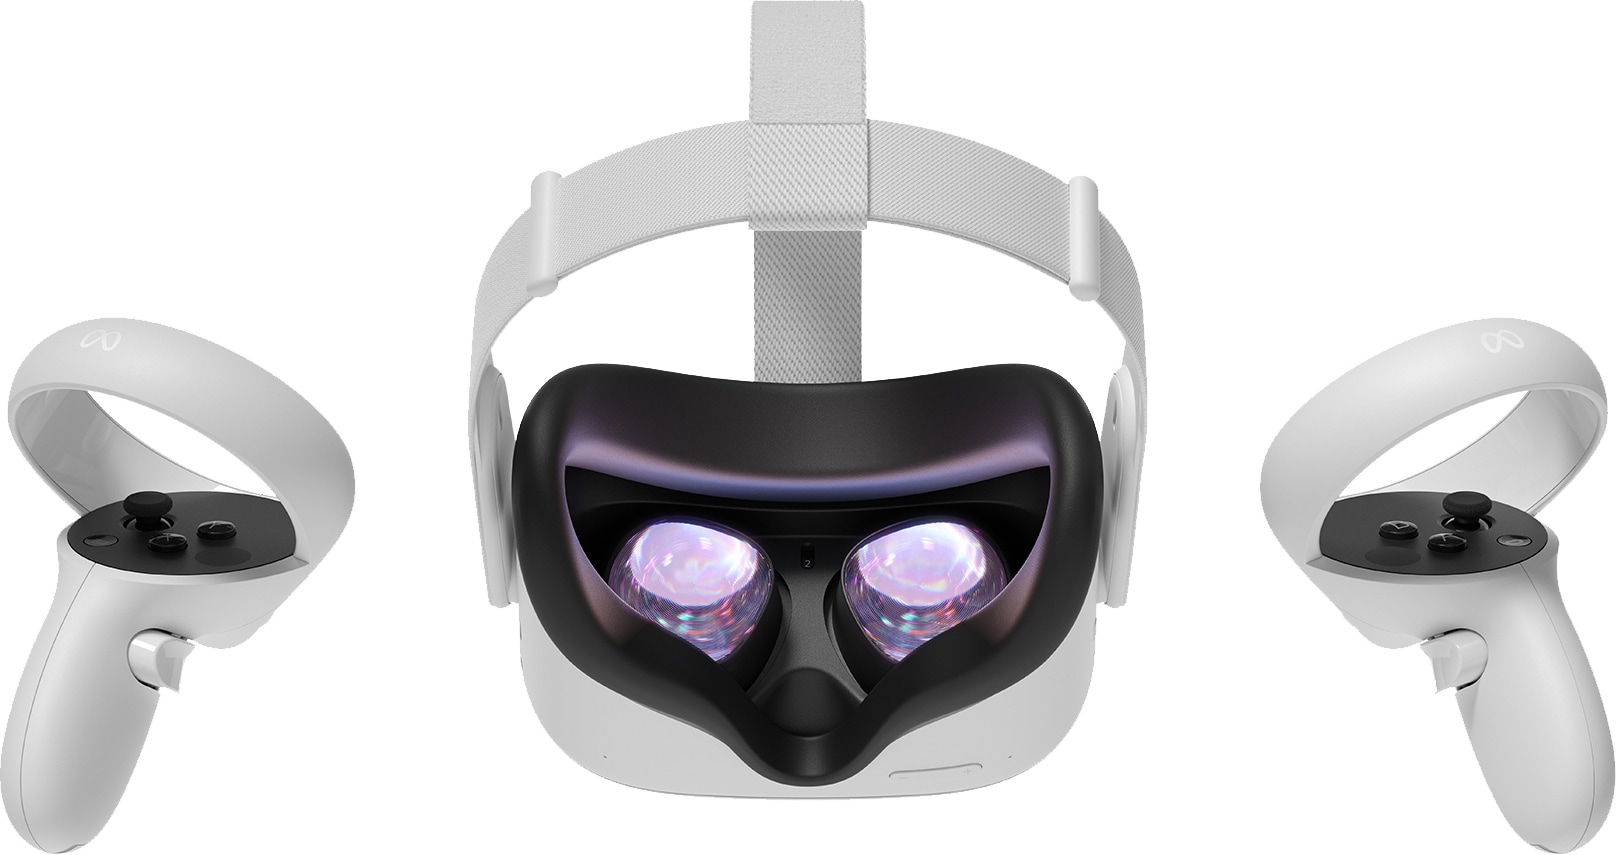 Meta Quest 2 VR headset (256 GB) | Elgiganten